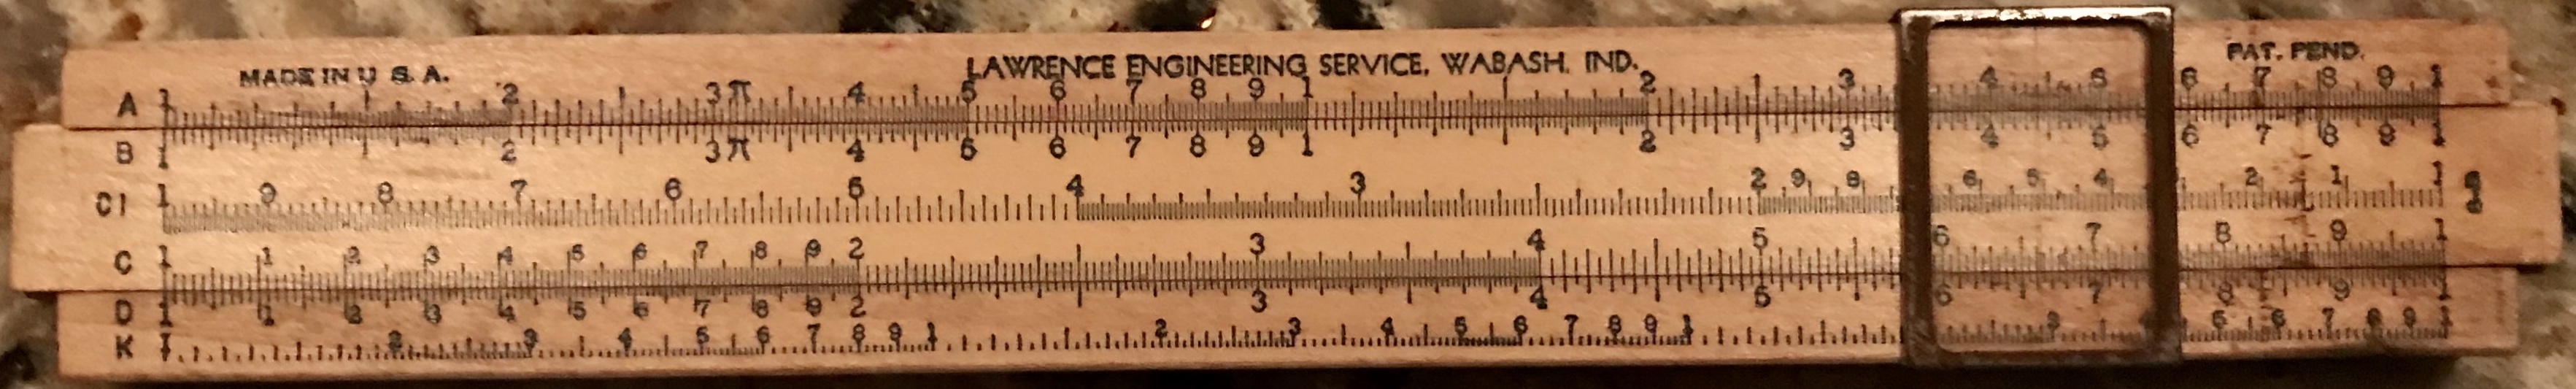 Lawrence Engineering Service, Wabash, Indiana, 8-B.